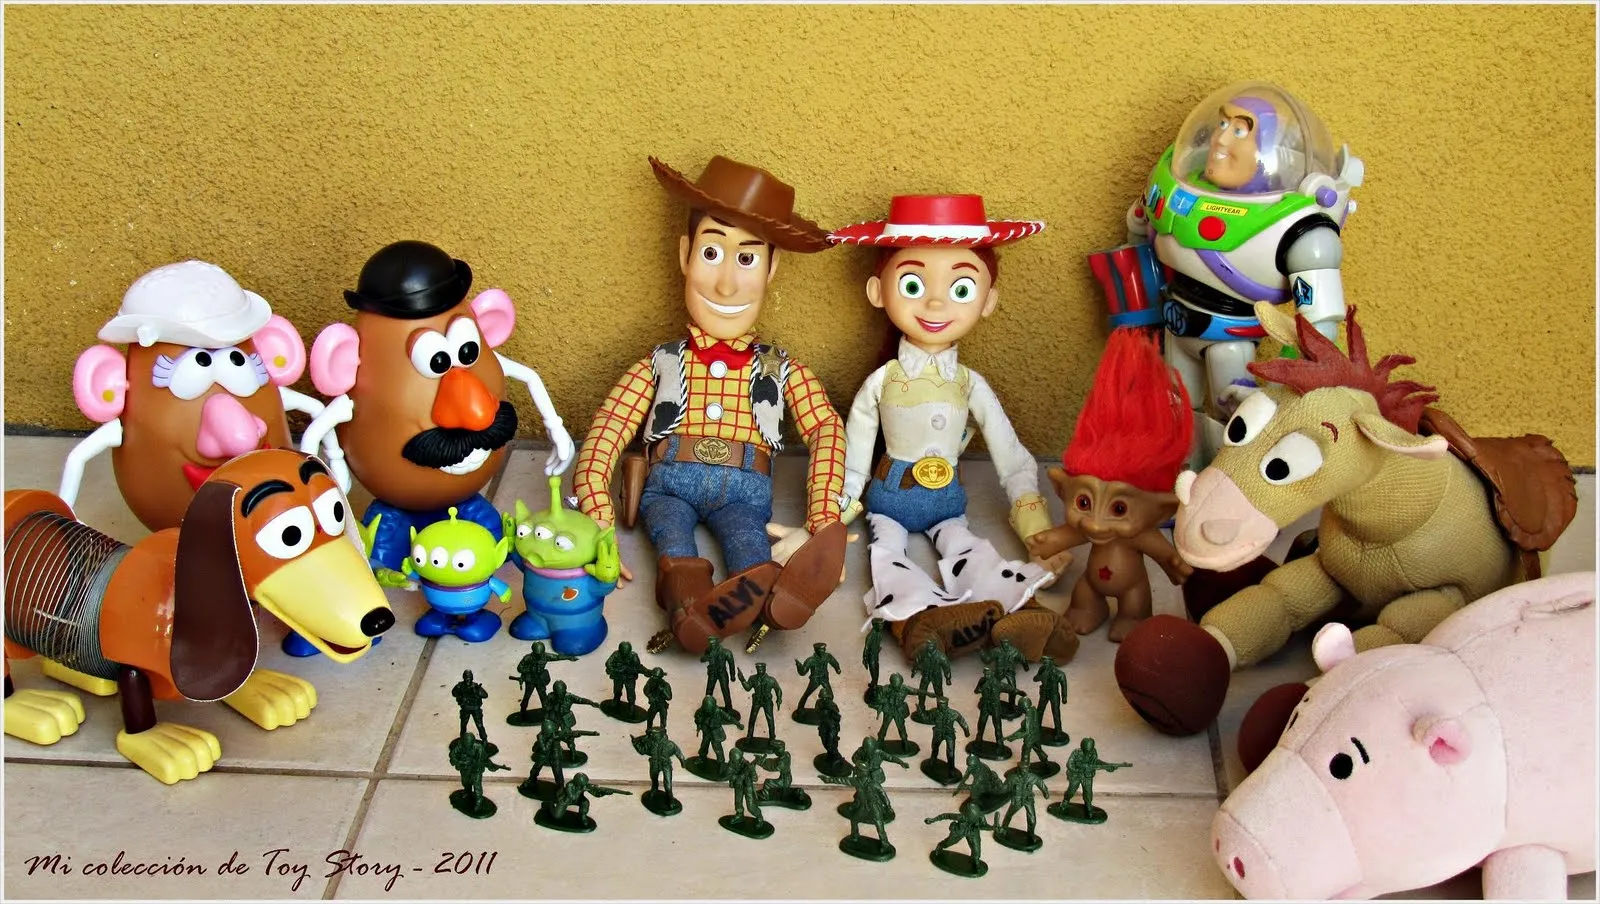 CLEPTONIA - blog de mis juguetes: Mi colección de Toy Story ...